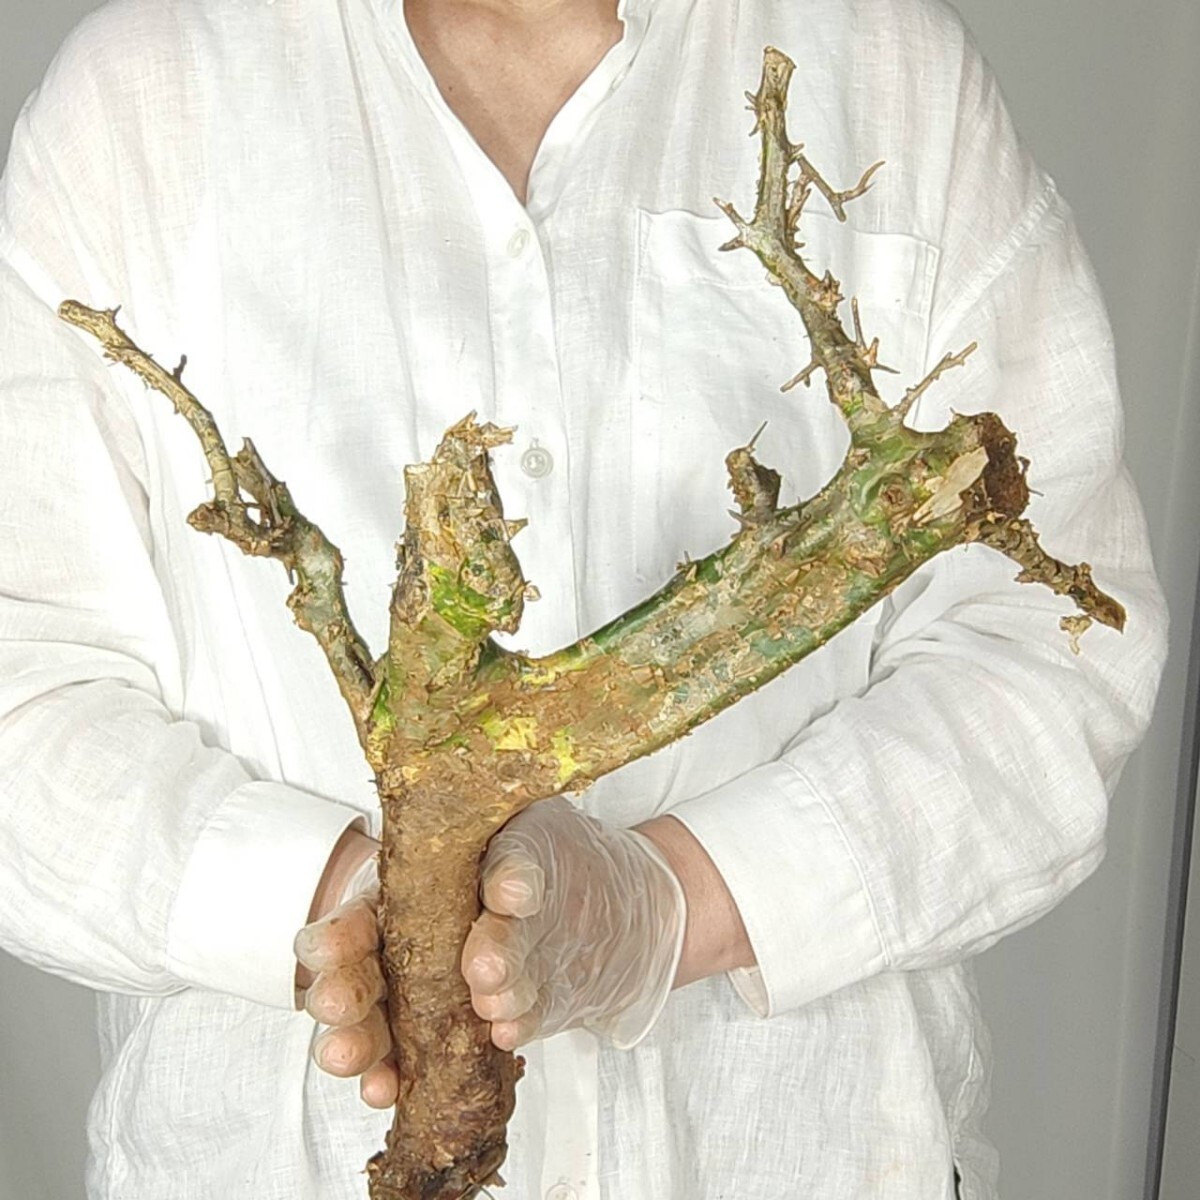 カンペストリス V136 コミフォラ・カンペストリス 塊根植物 観葉植物 未発根 多肉植物 灌木 パキプス グラキリス 盆栽 アガベ コーデックスの画像5